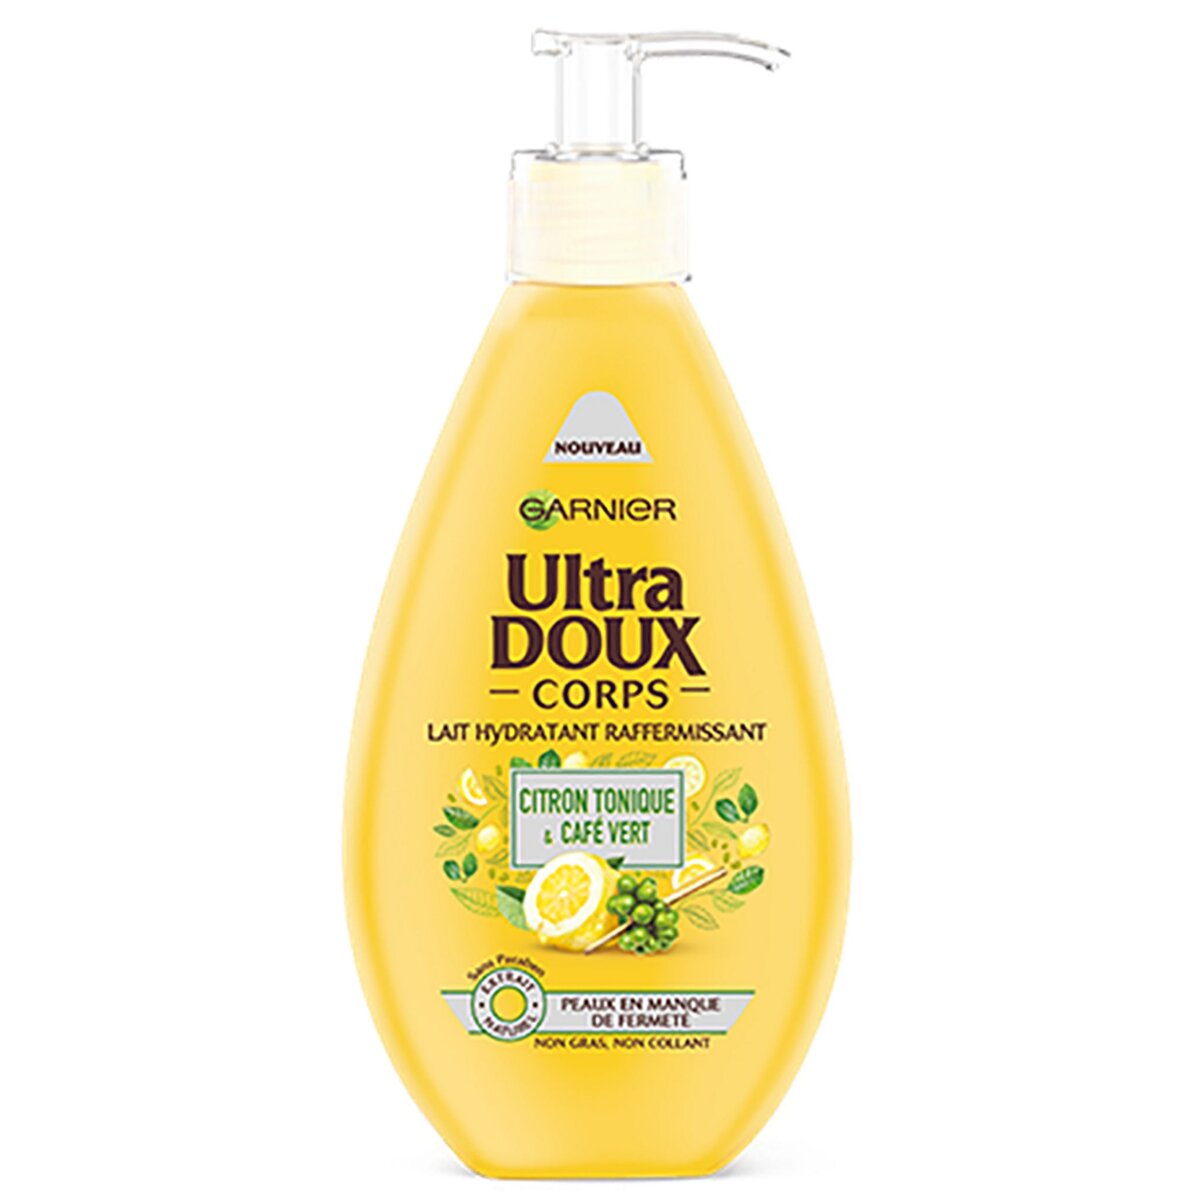 ULTRA DOUX Lait corps hydratant raffermissant citron & café vert peaux relachées 250ml